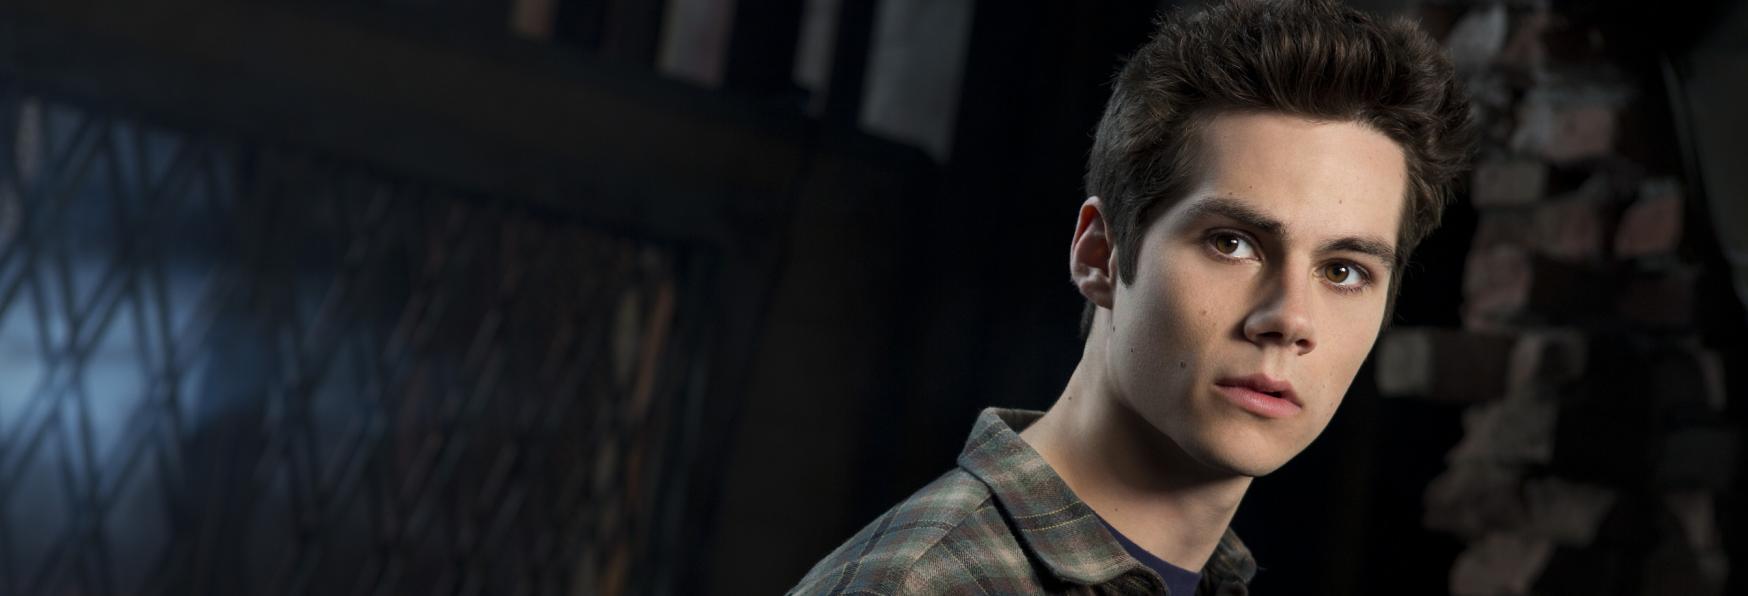 Teen Wolf: The Movie - l'Assenza di Stiles Stilinski mette a Repentaglio la Qualità del Film Revival?